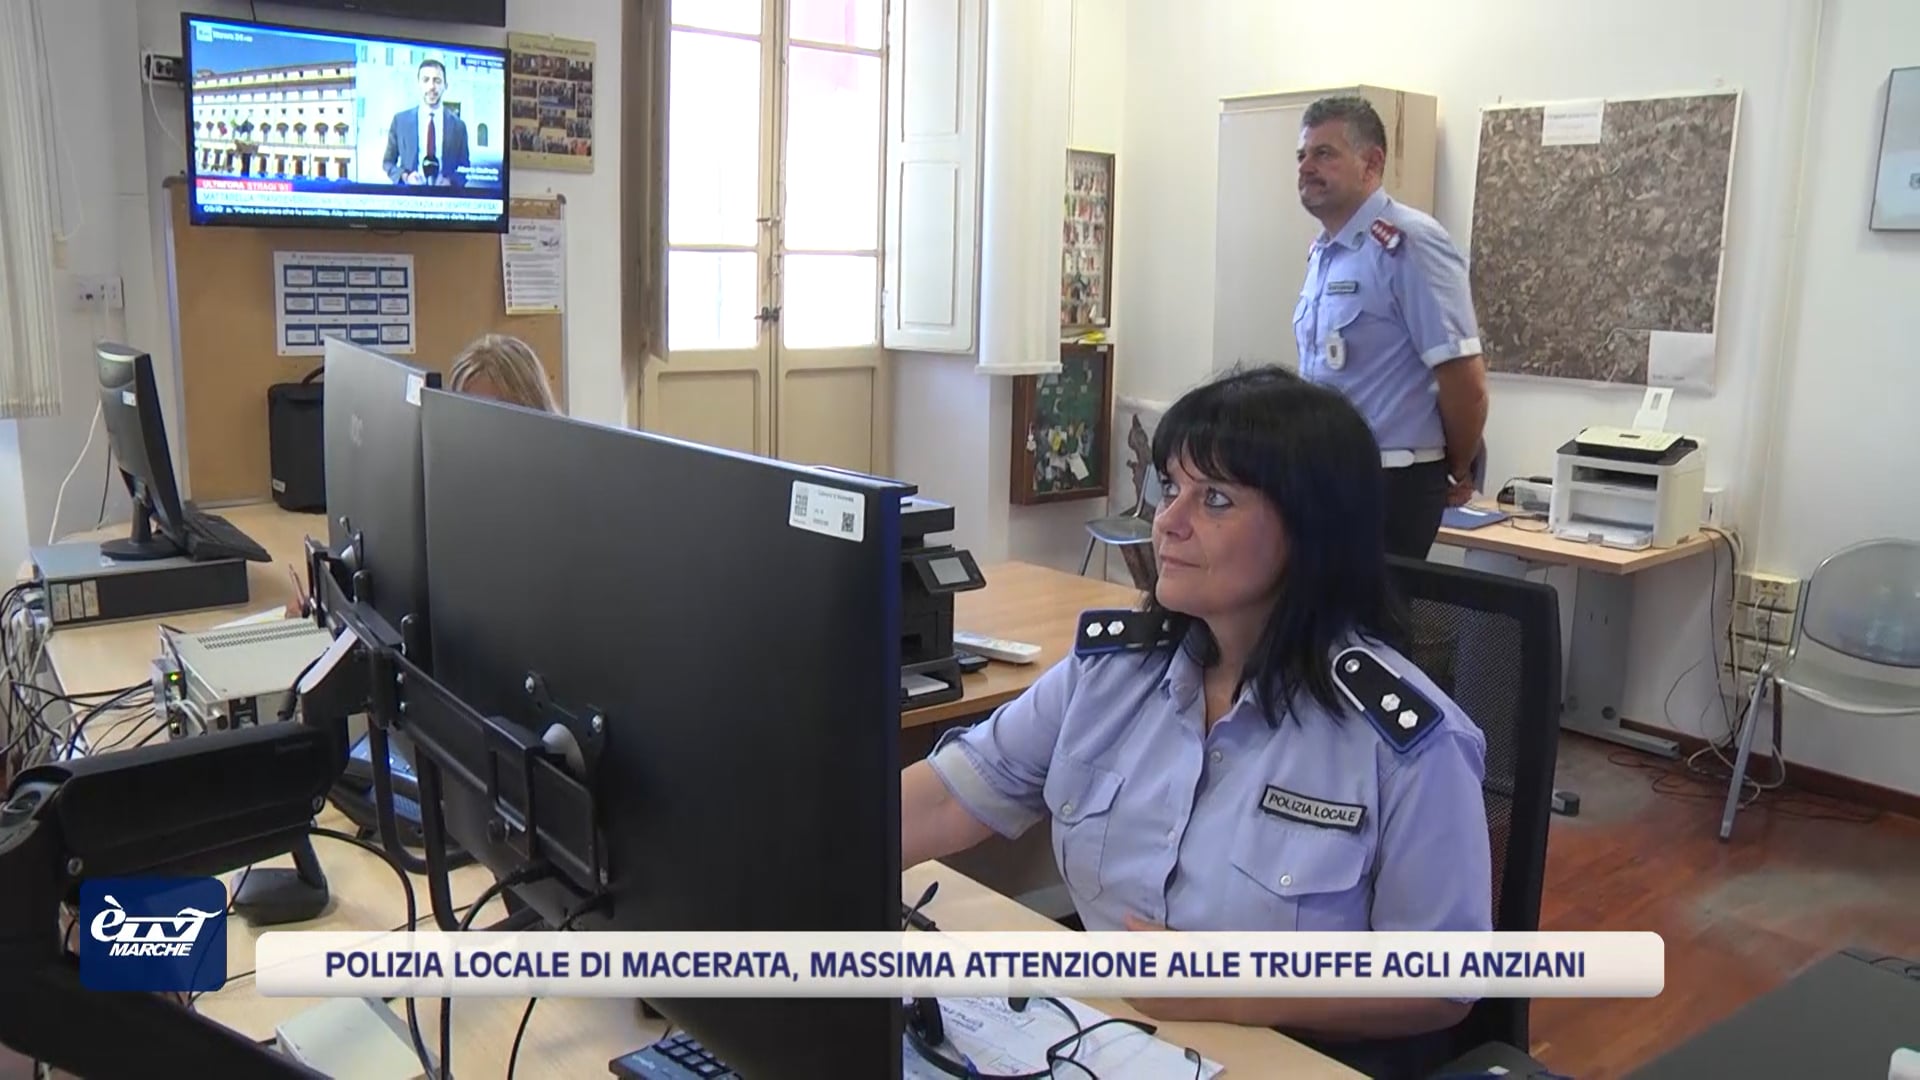 Polizia Locale di Macerata, massima attenzione alle truffe agli anziani - VIDEO